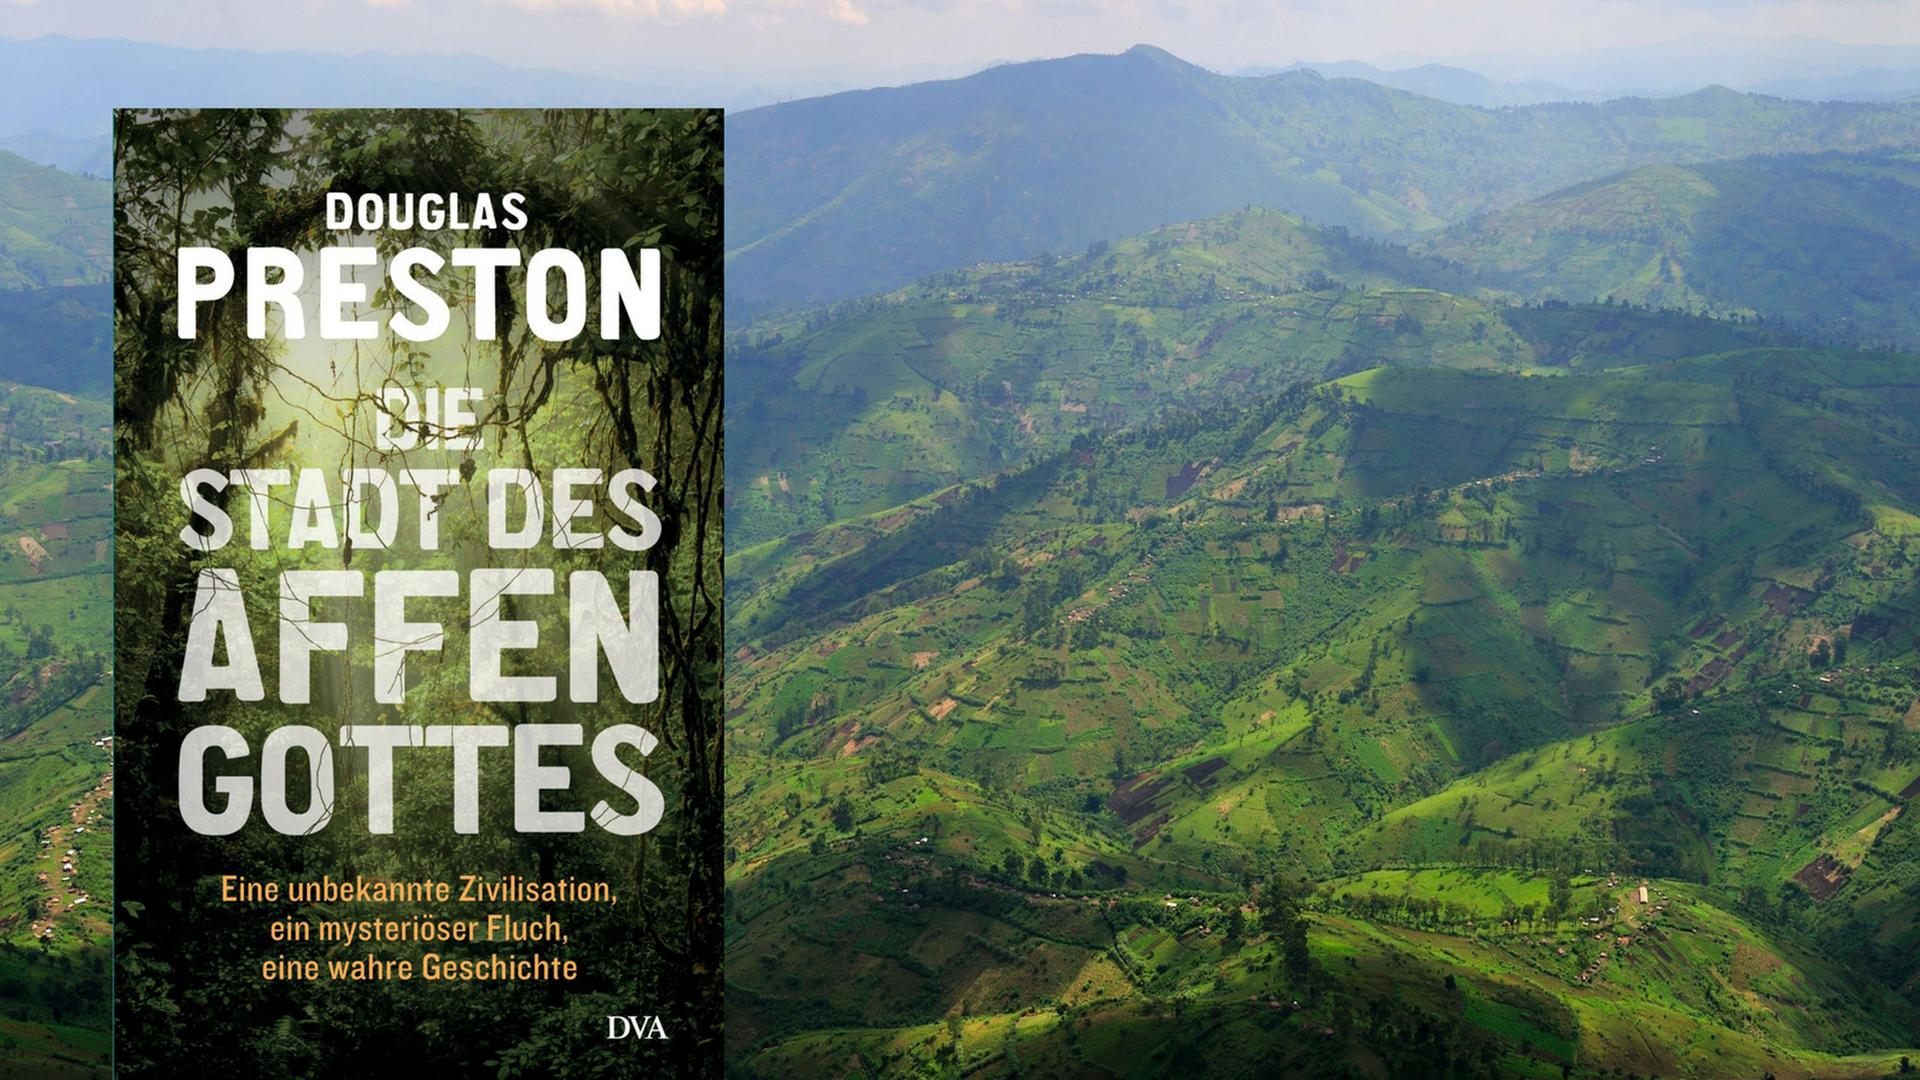 Das neue Buch von Douglas Preston: Abenteuer-Trip in den honduranischen Dschungel